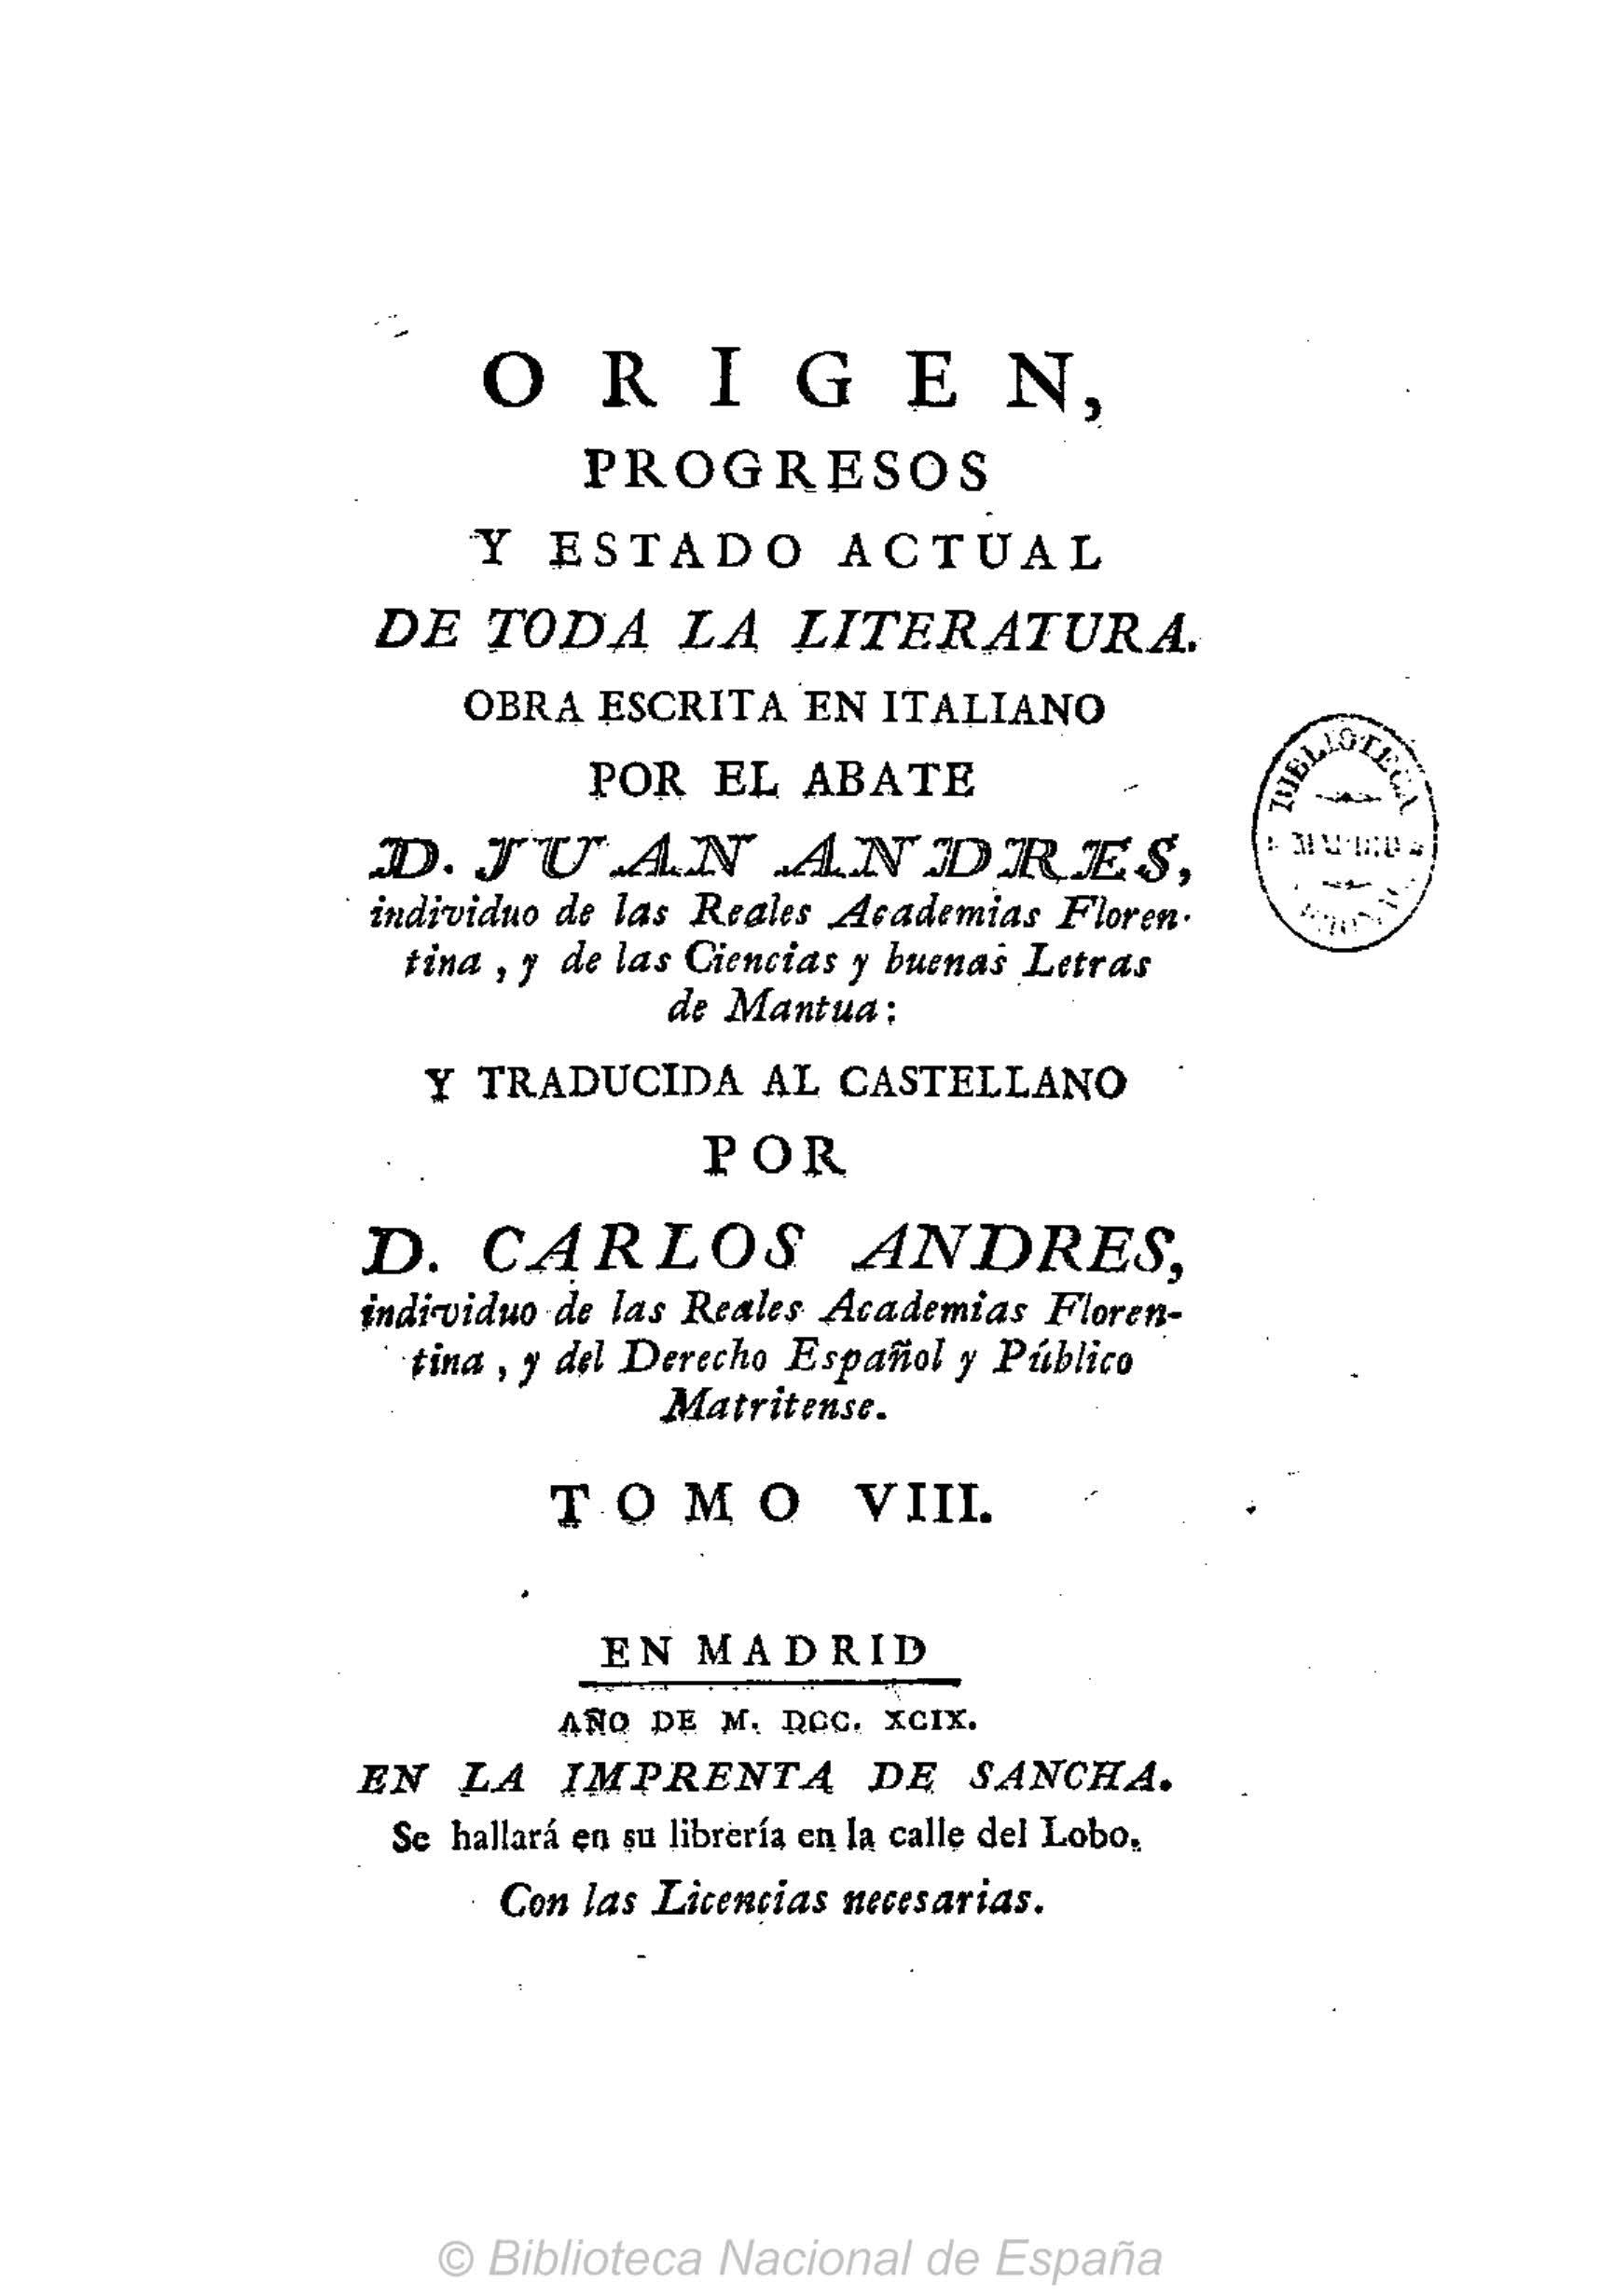 Origen, progresos y estado actual de toda la literatura, Tomo VIII